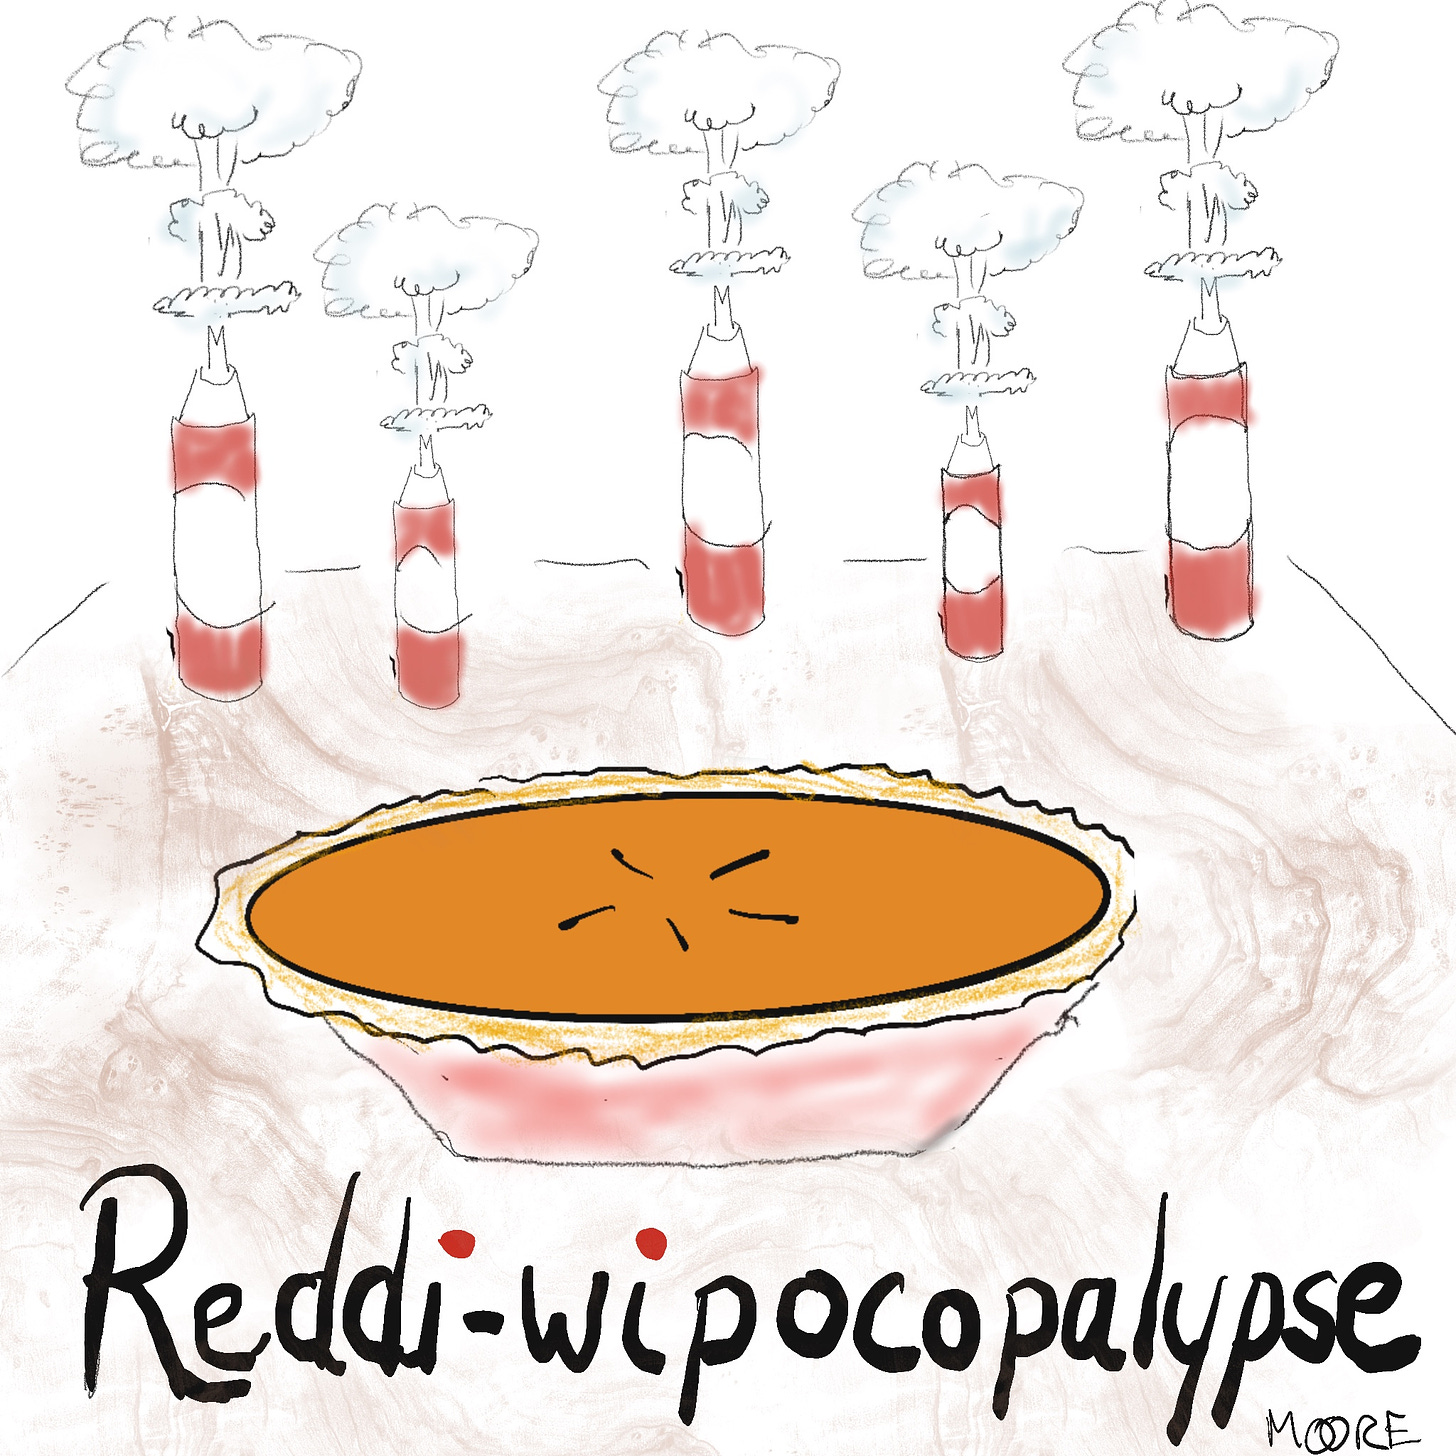 Redi-Wip and pumpkin pie